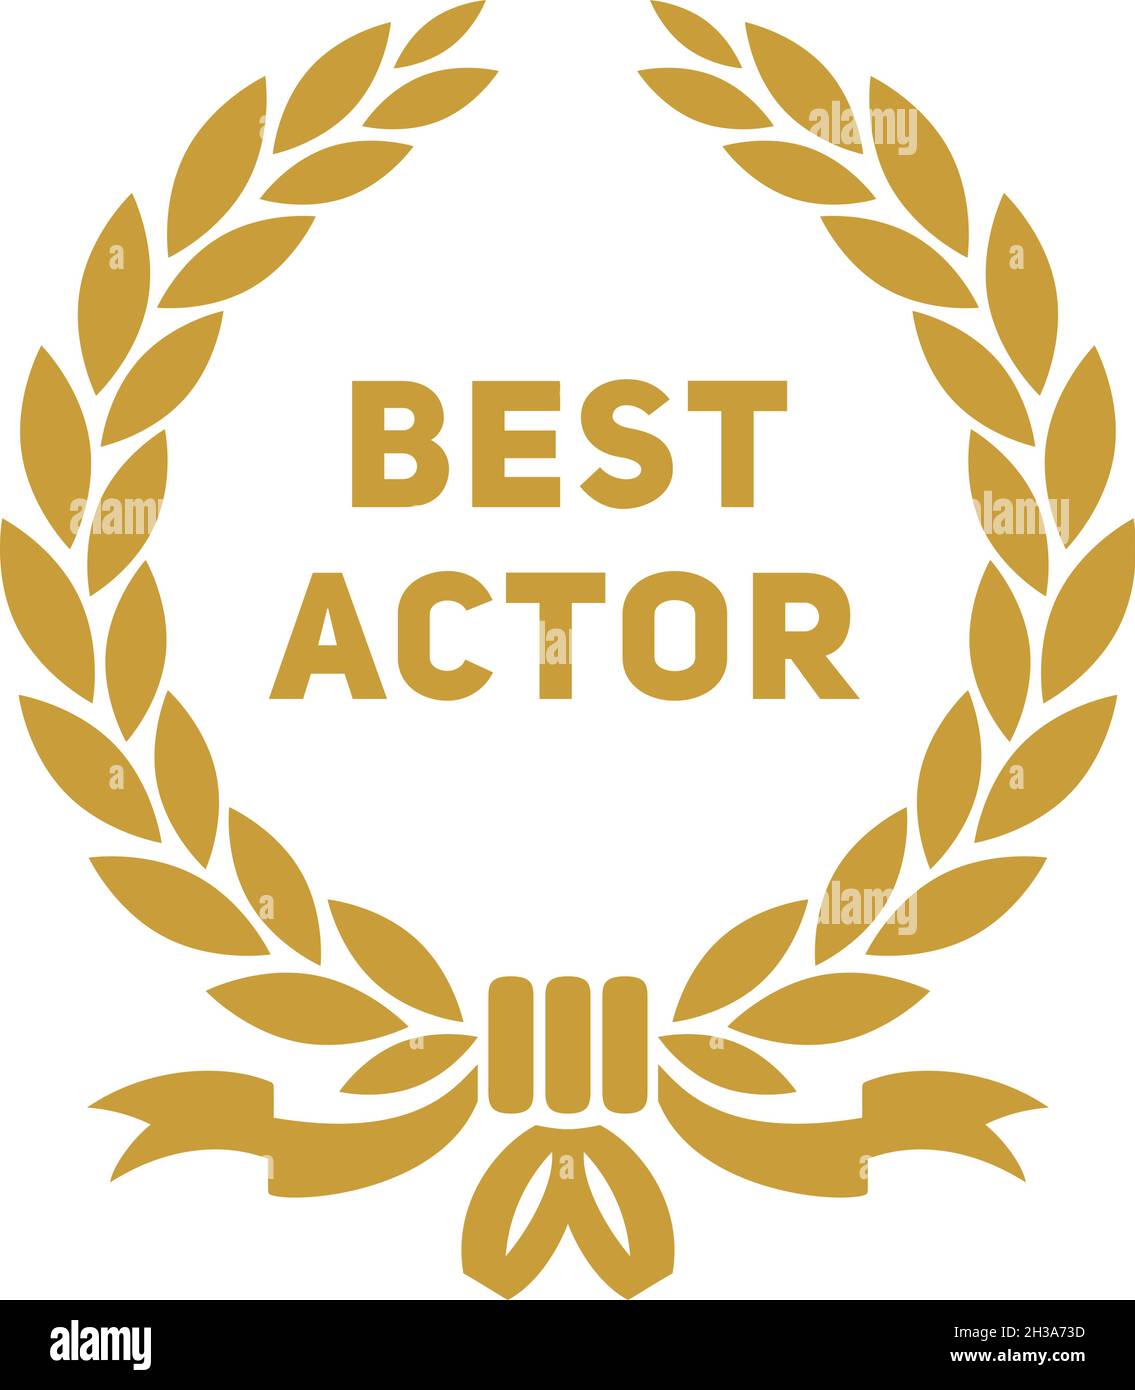 Best actor award label. Golden laurel branch. Vintage style Stock Vector